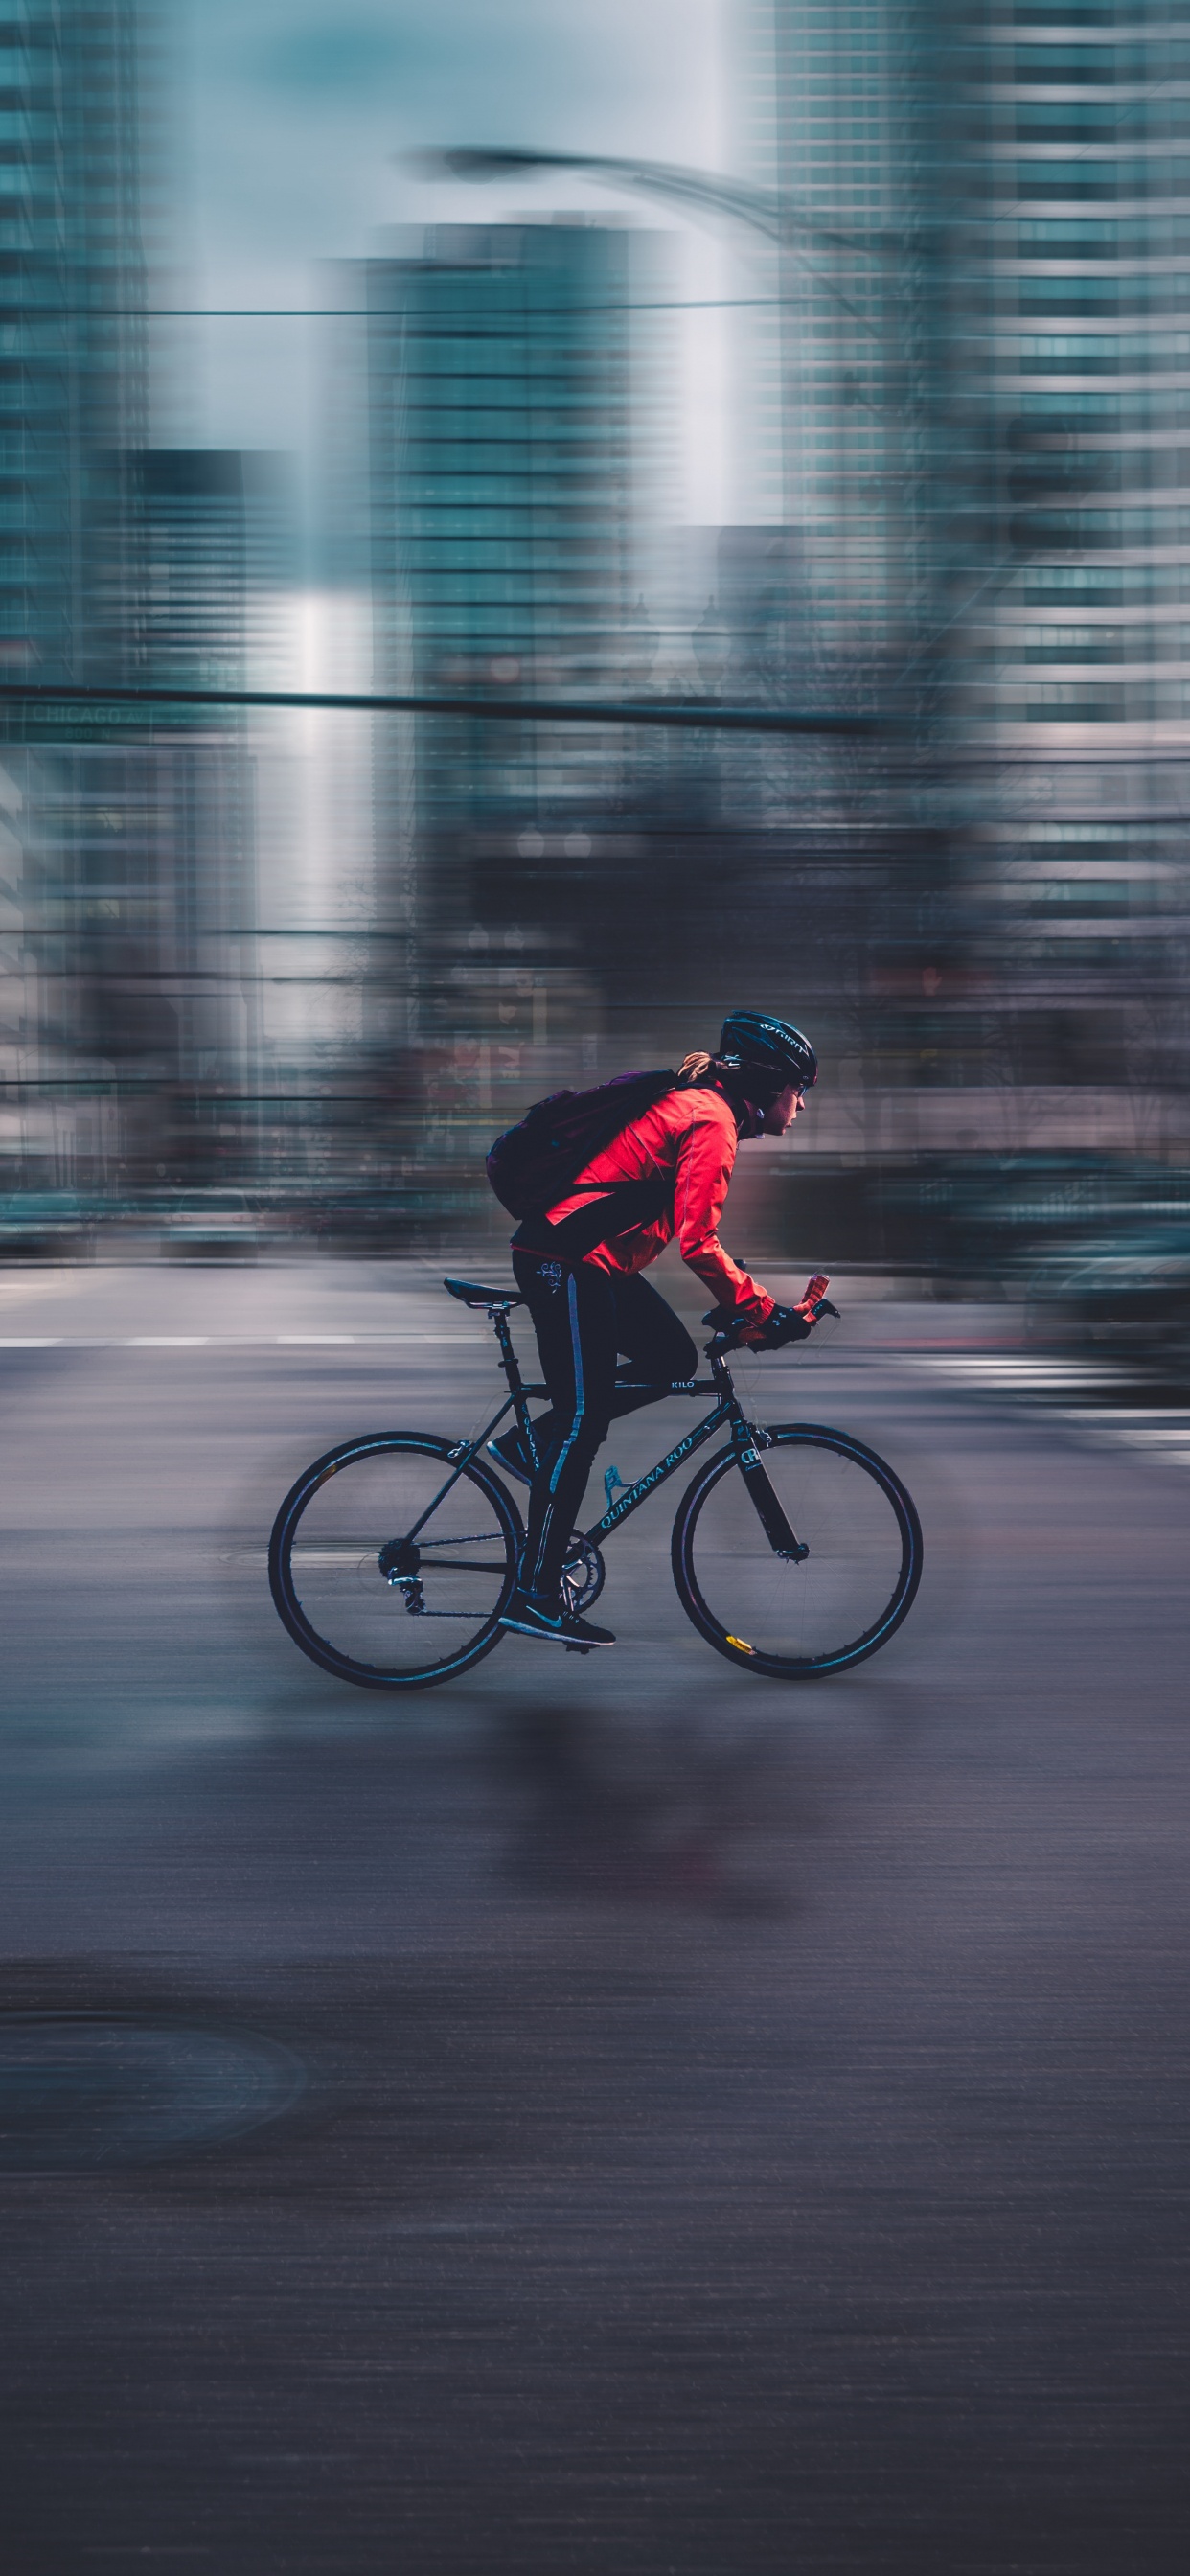 Hombre de Chaqueta Roja Montando Bicicleta en la Carretera Durante el Día. Wallpaper in 1242x2688 Resolution